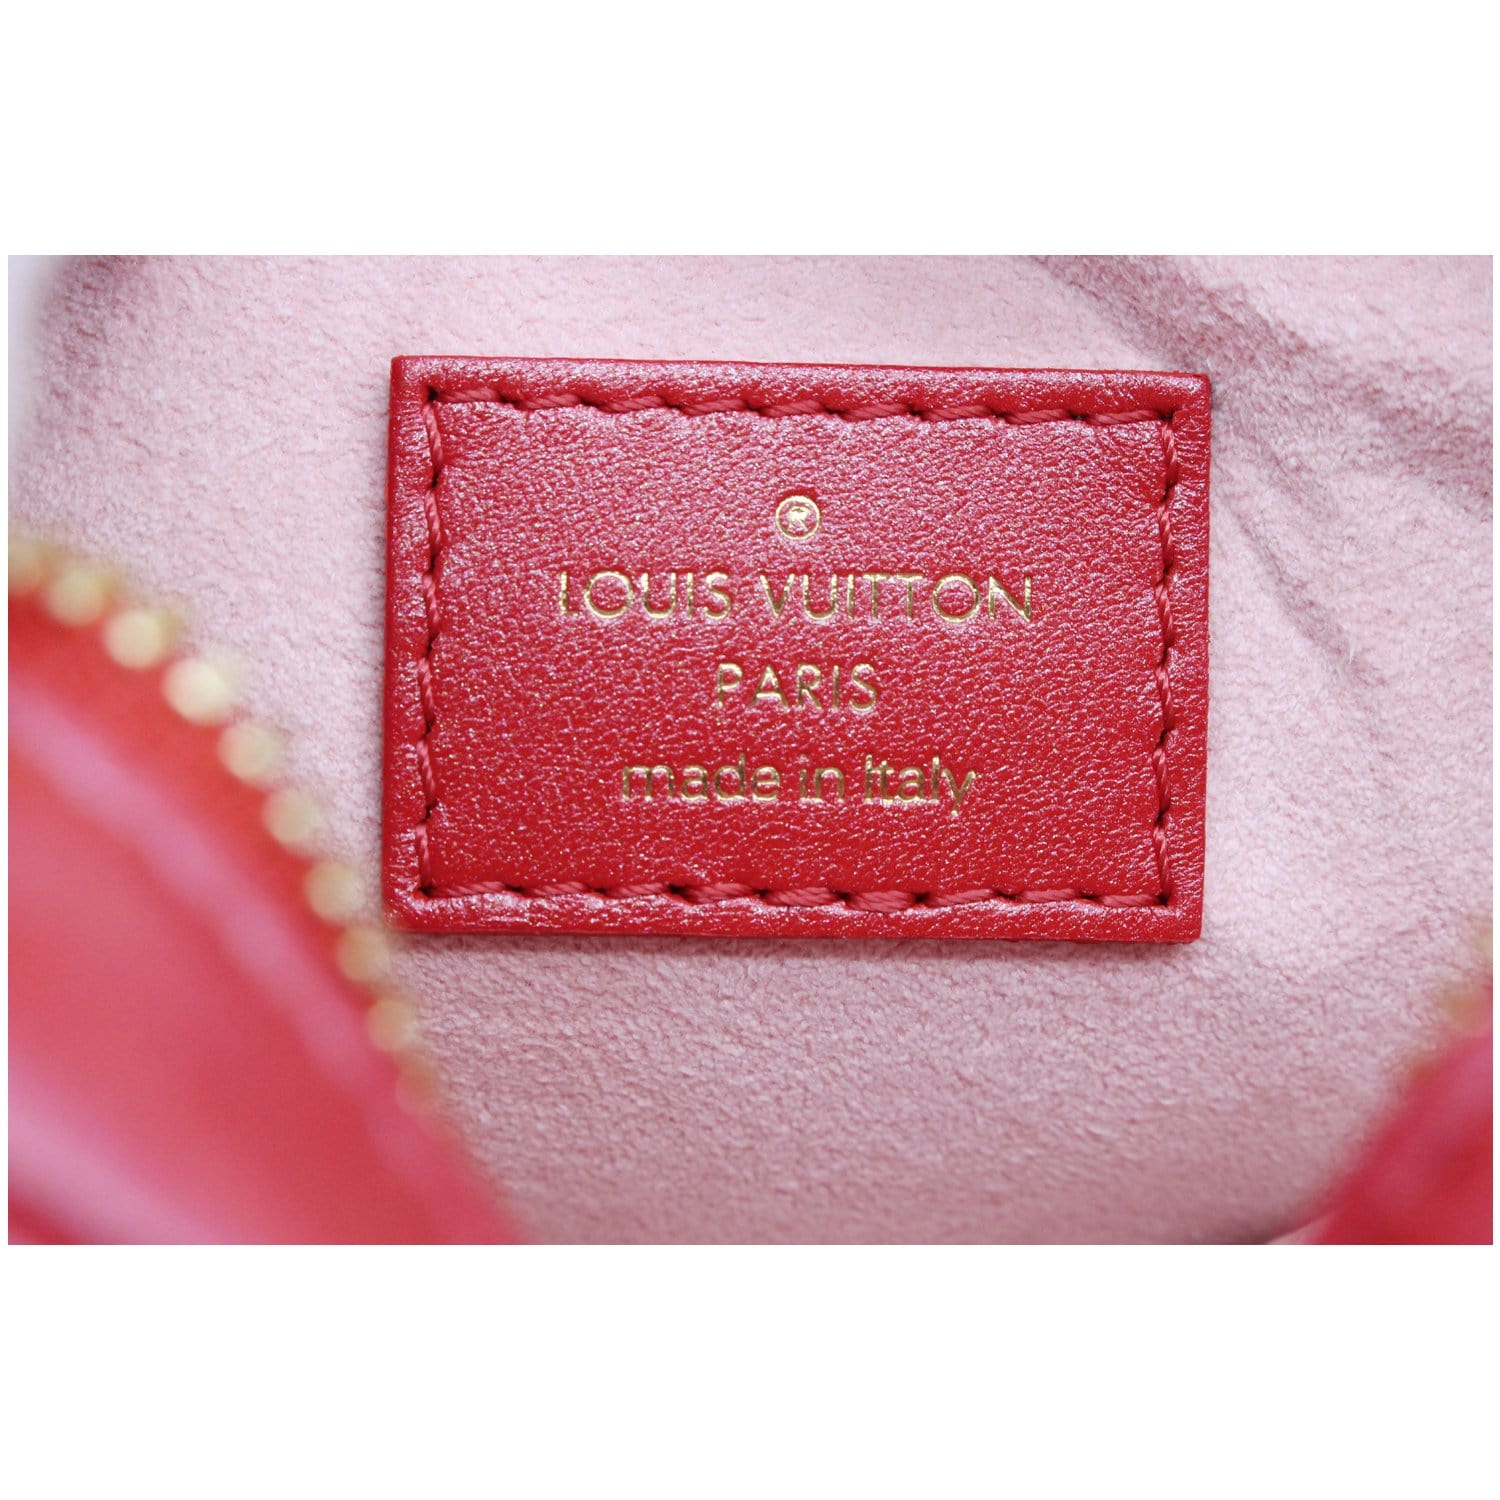 Louis Vuitton Wallets for sale in Paris, France